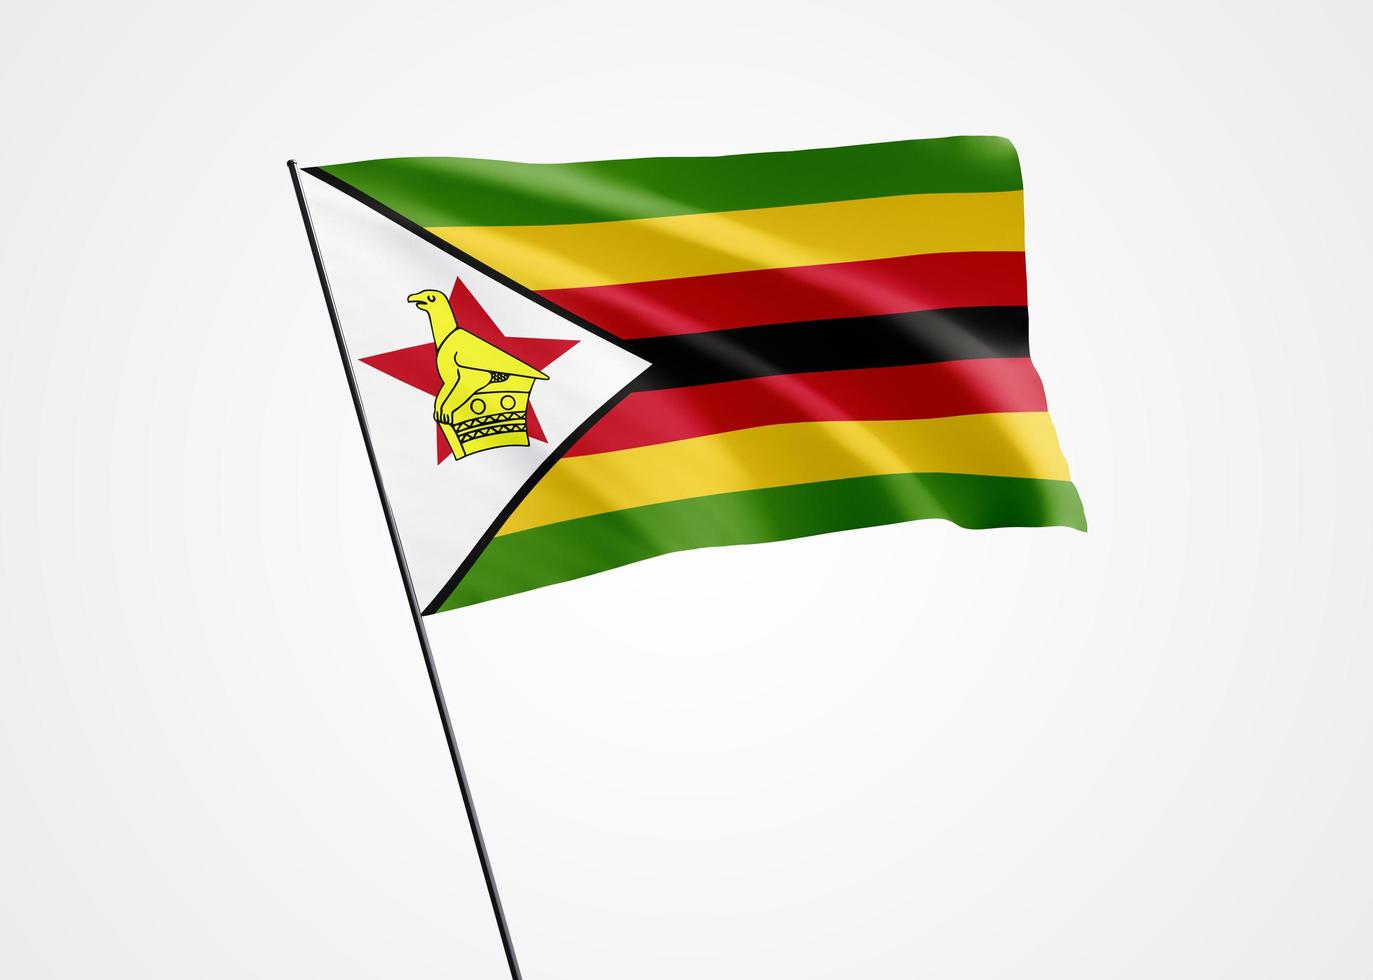 Bandera de zimbabwe volando alto en el fondo blanco aislado. 18 de abril día de la independencia de zimbabwe. colección de la bandera nacional mundial colección de la bandera nacional mundial foto